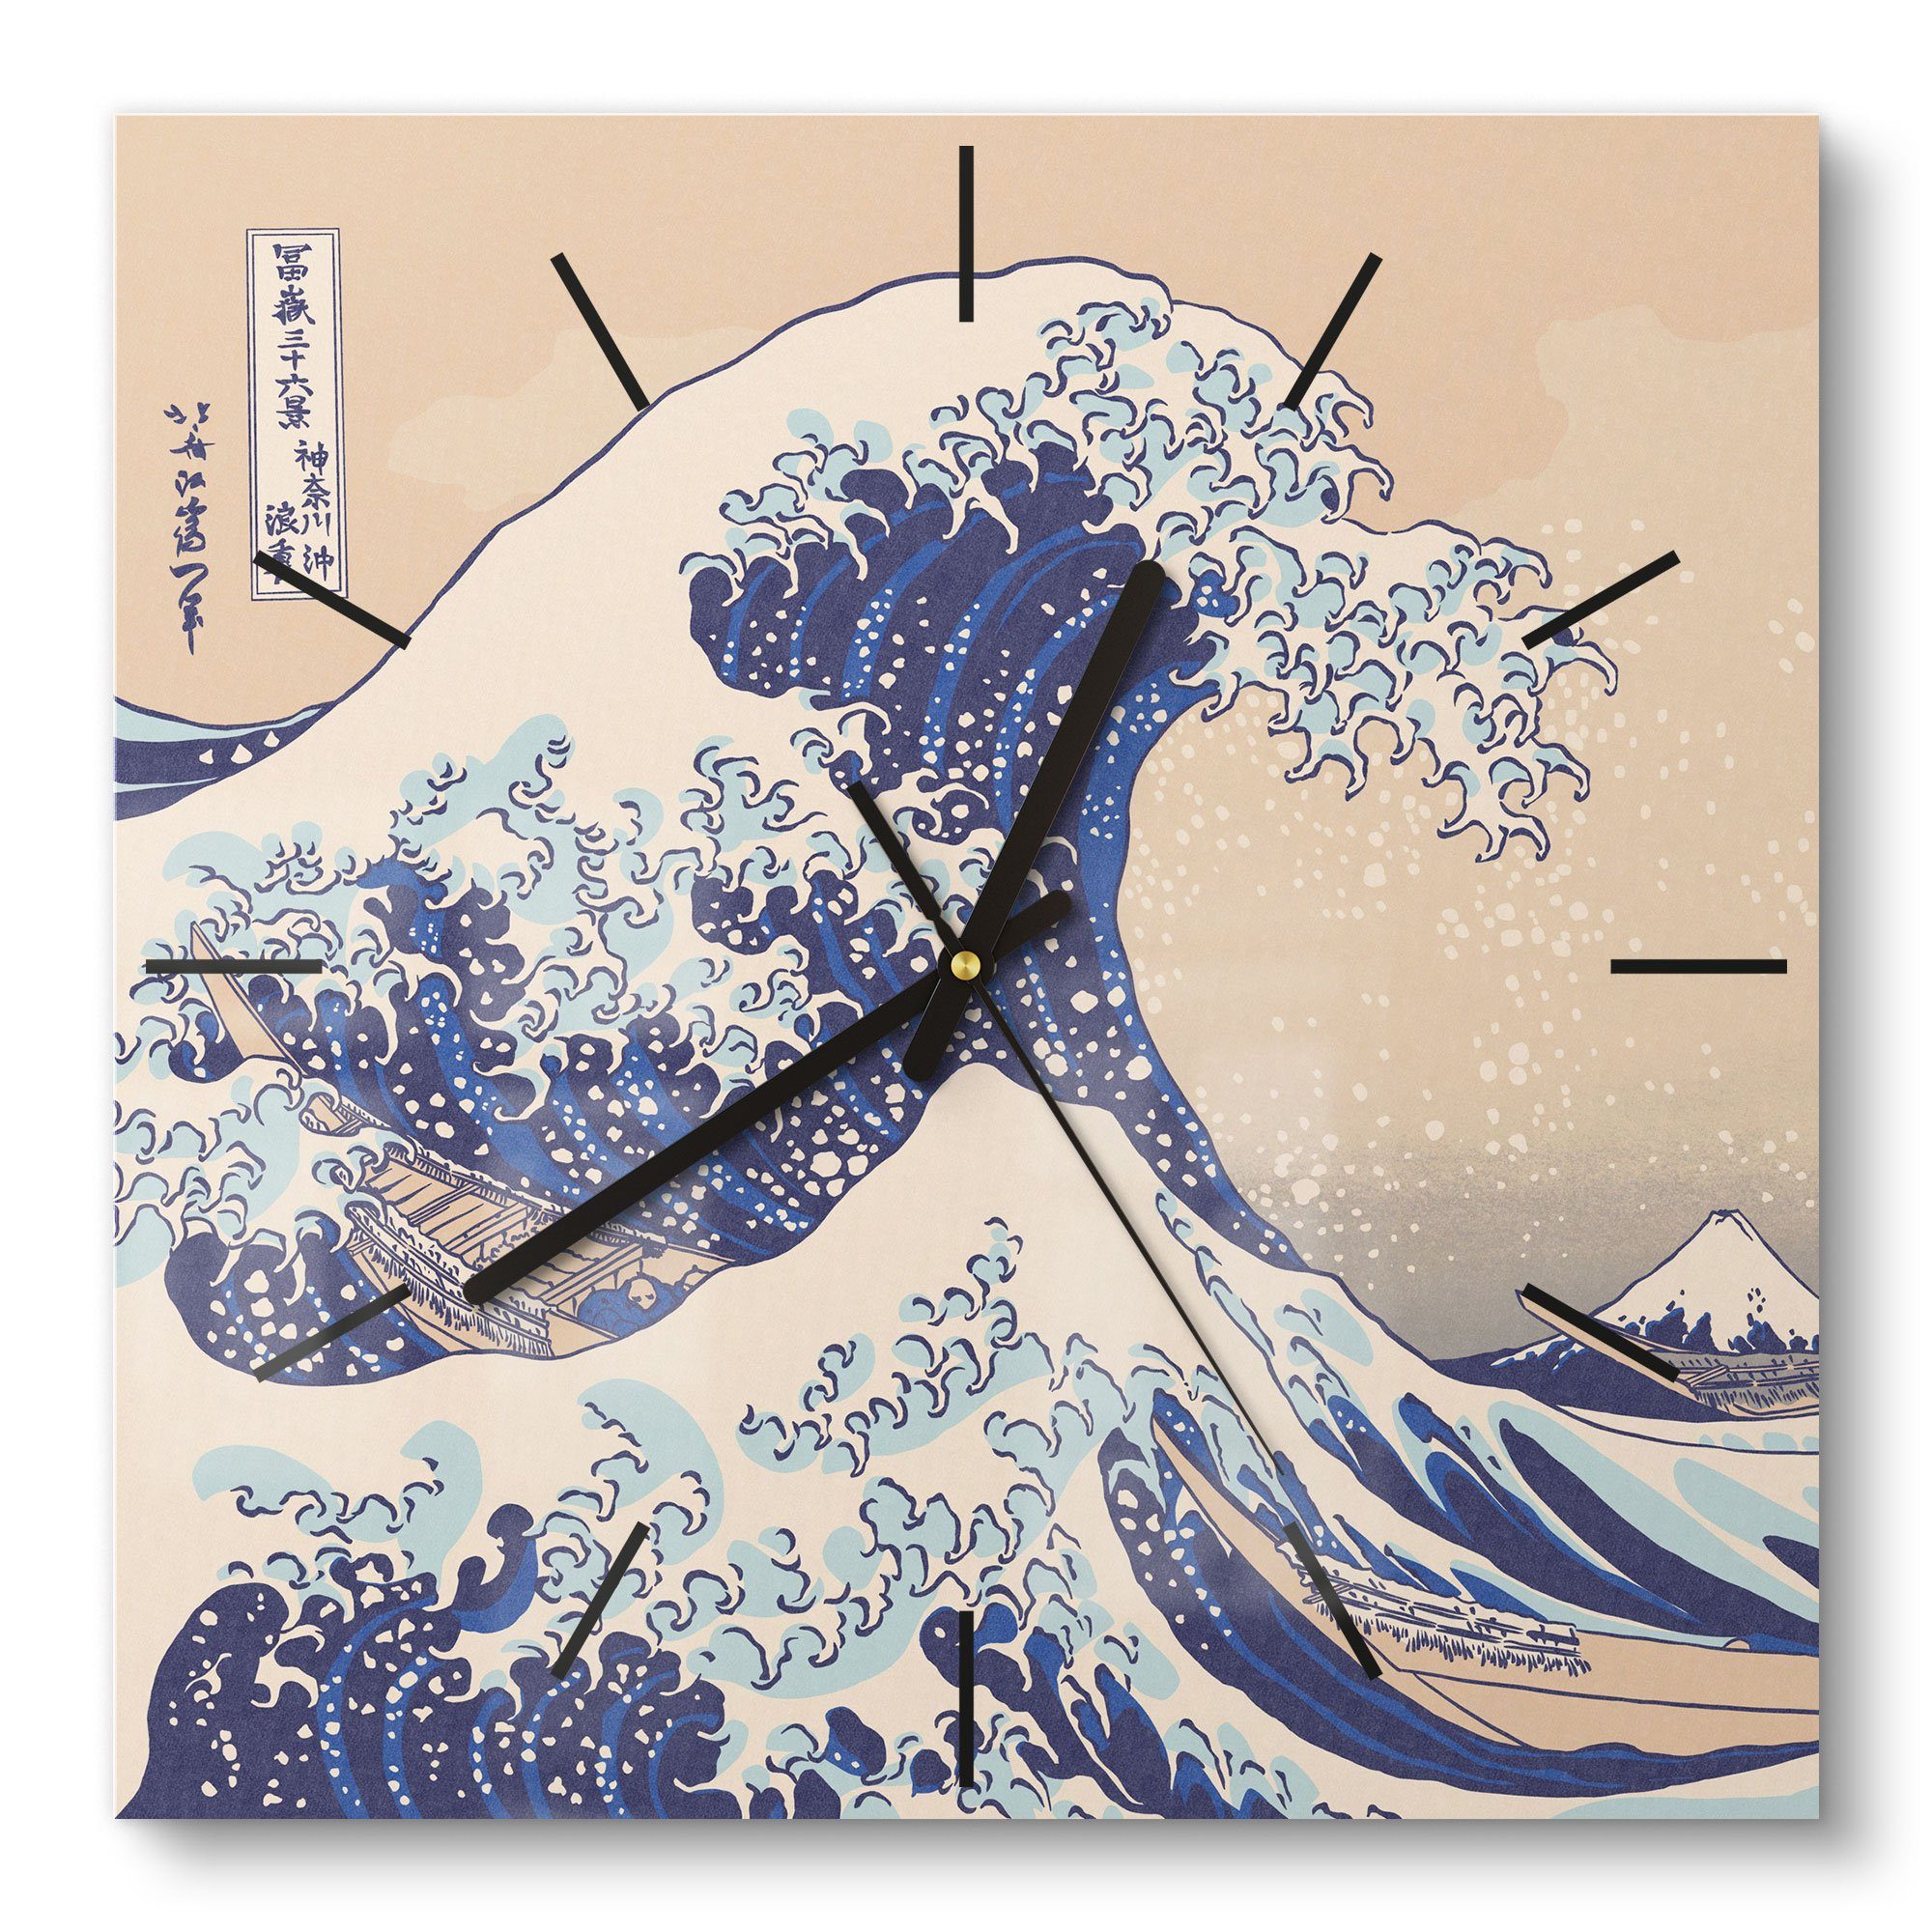 DEQORI Wanduhr 'Große Welle vor Kanagawa' (Glas Glasuhr modern Wand Uhr Design Küchenuhr)